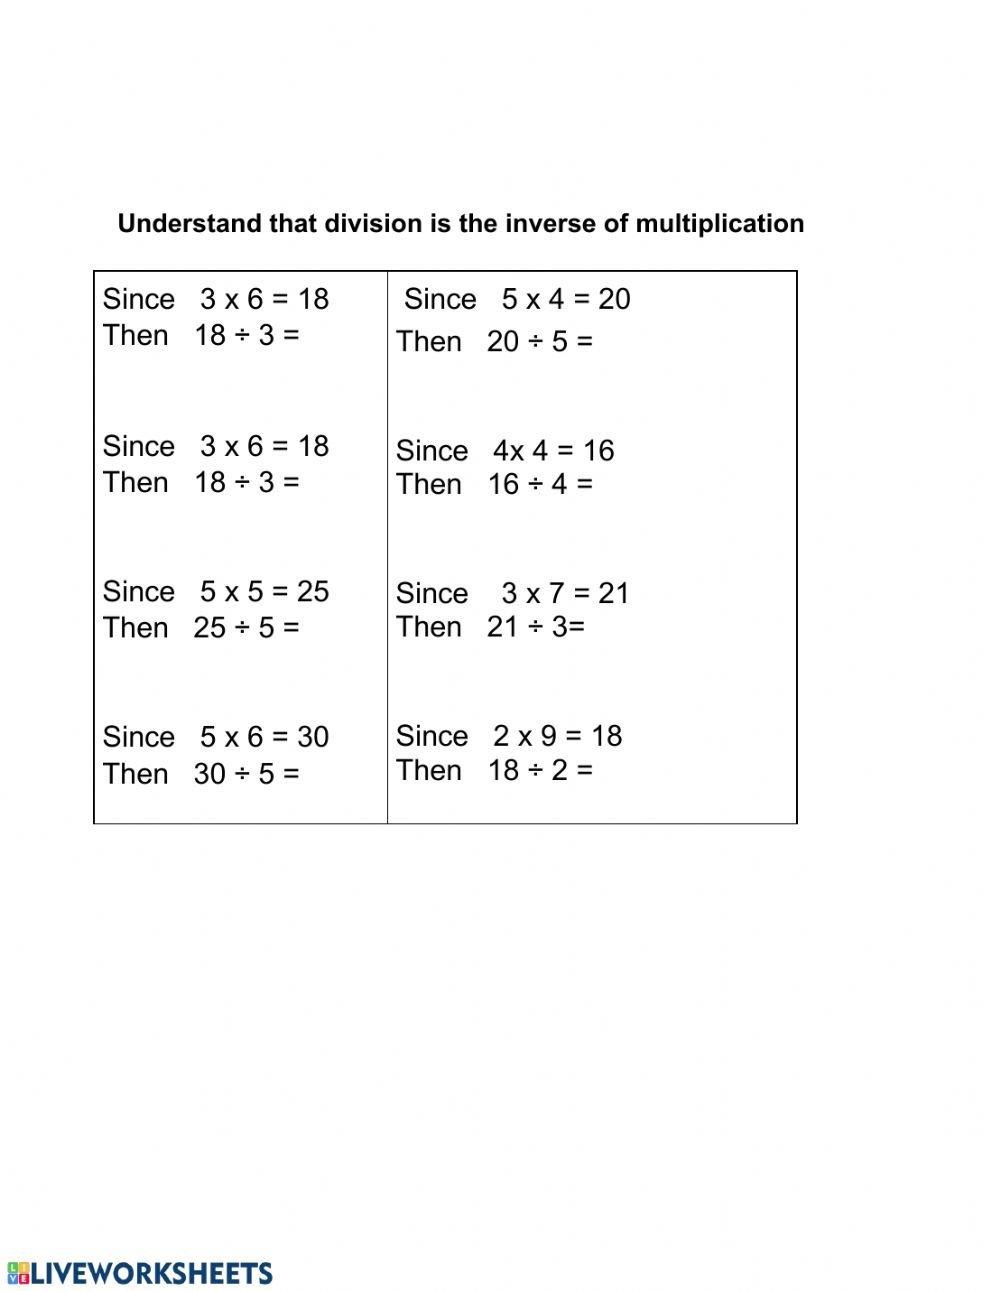 division-inverse-of-multiplication-worksheets-divisonworksheets